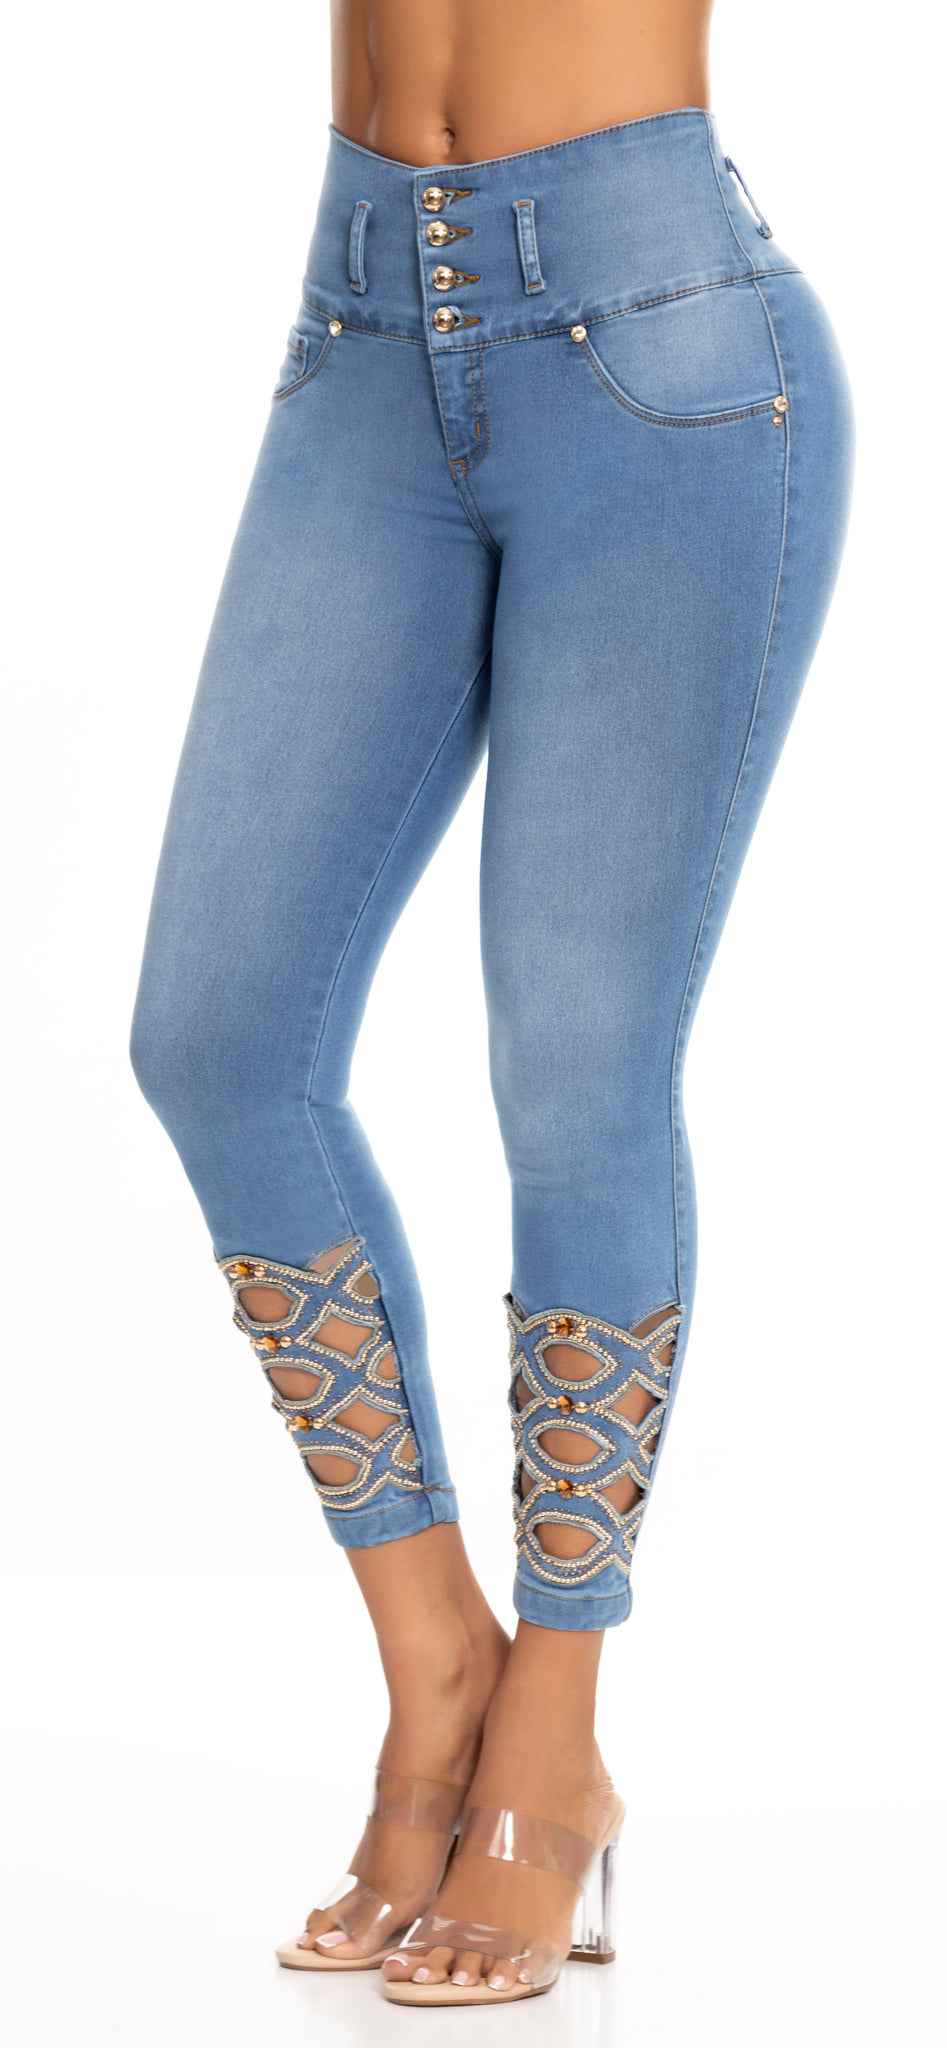 Levantacola Pedreria Ref – Moda Colombiana Jeans y Fajas